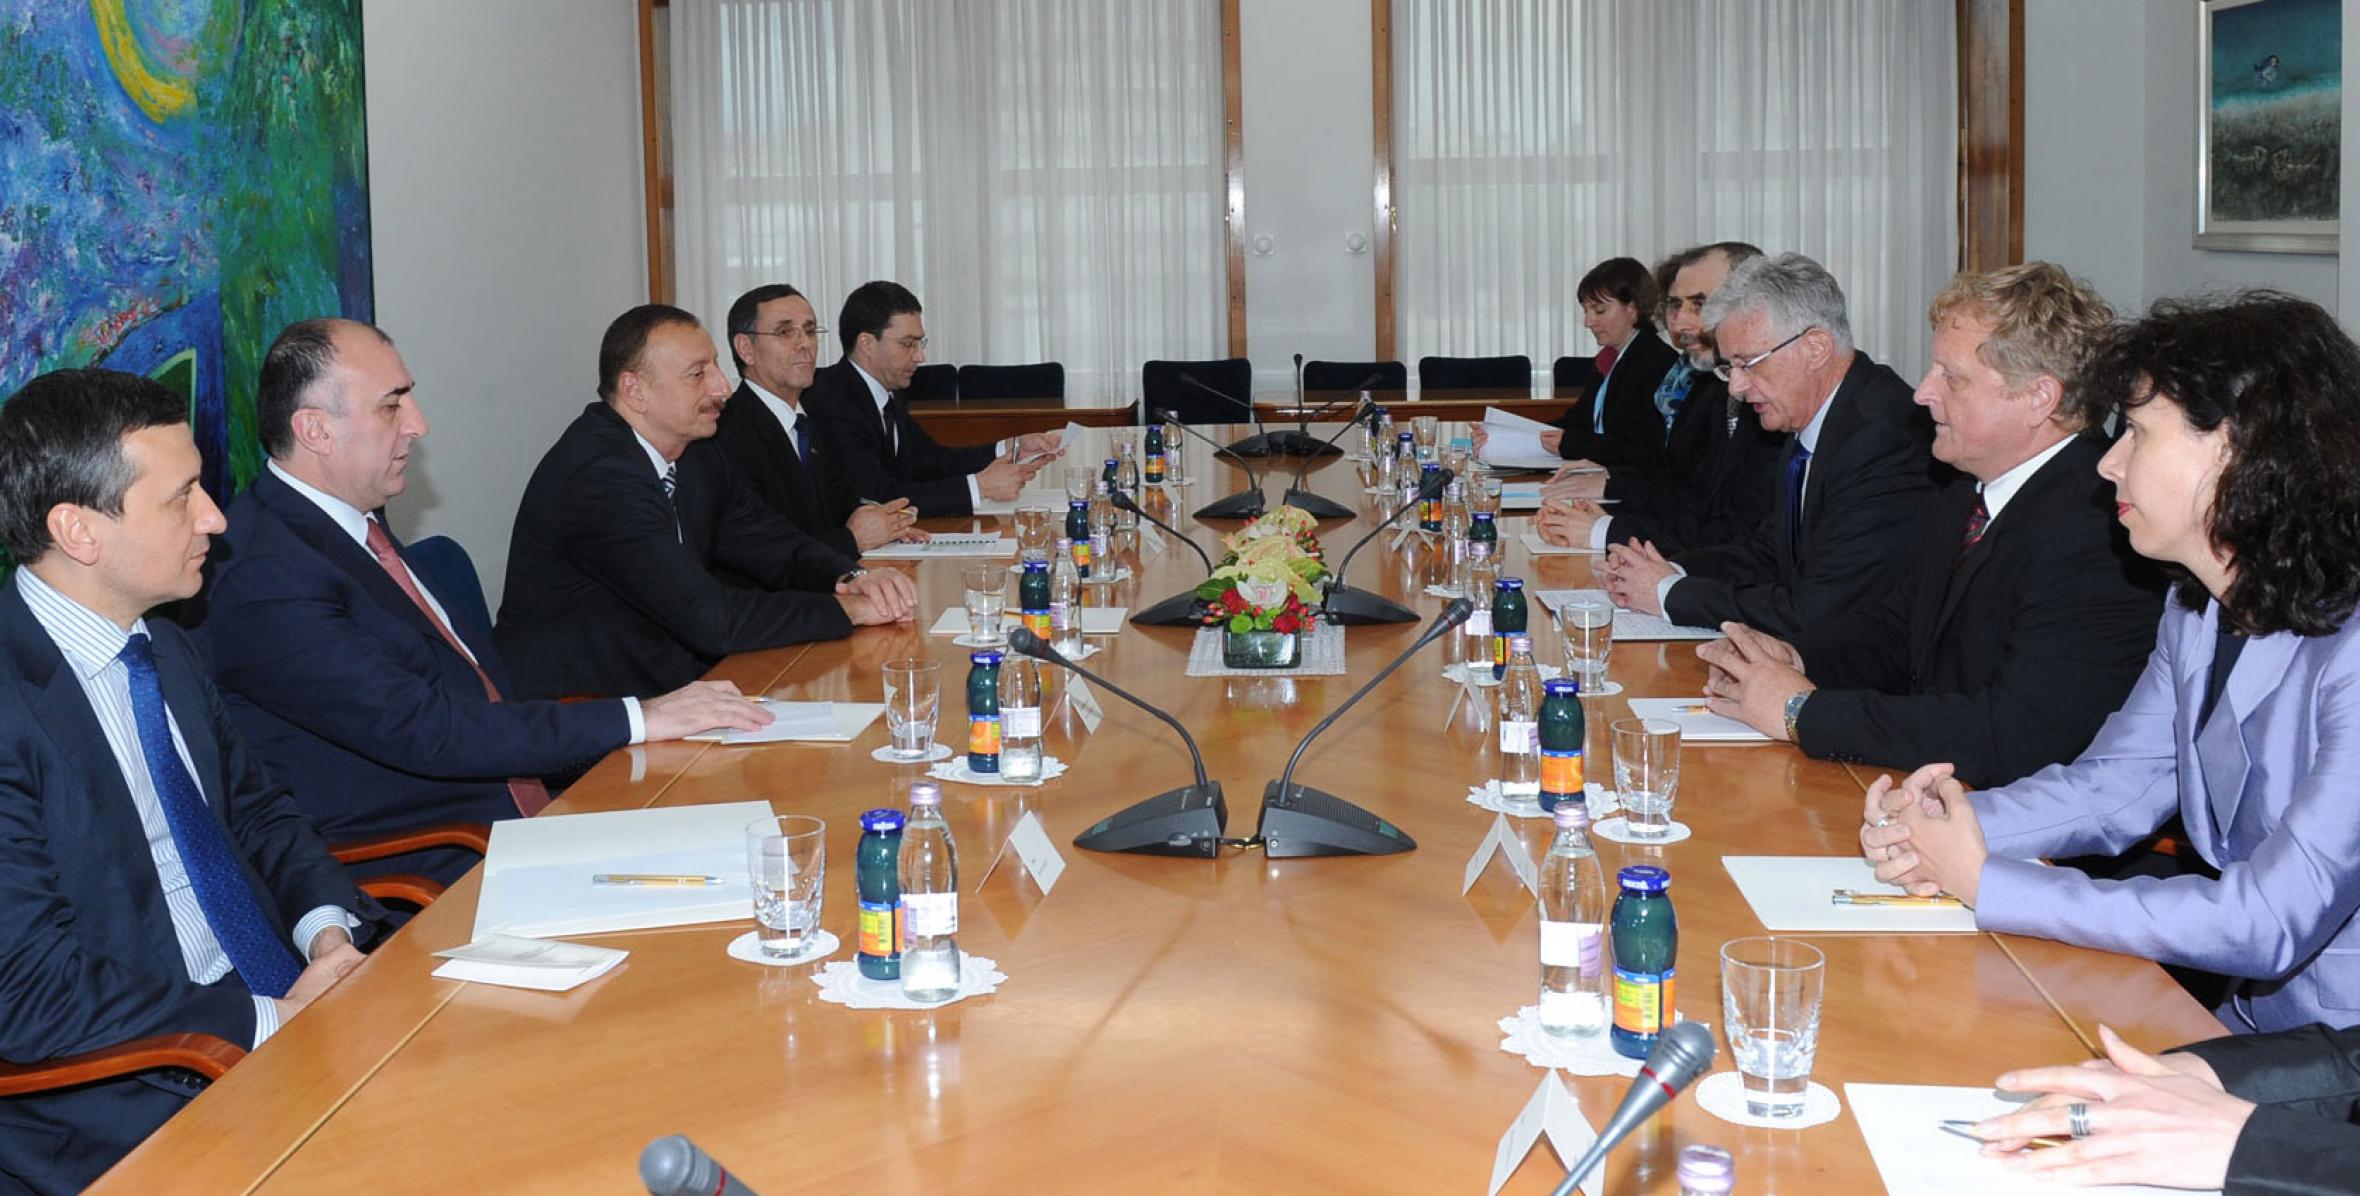 İlham Əliyev Sloveniya Milli Assambleyasının prezidenti Pavel Qantar ilə görüşmüşdür